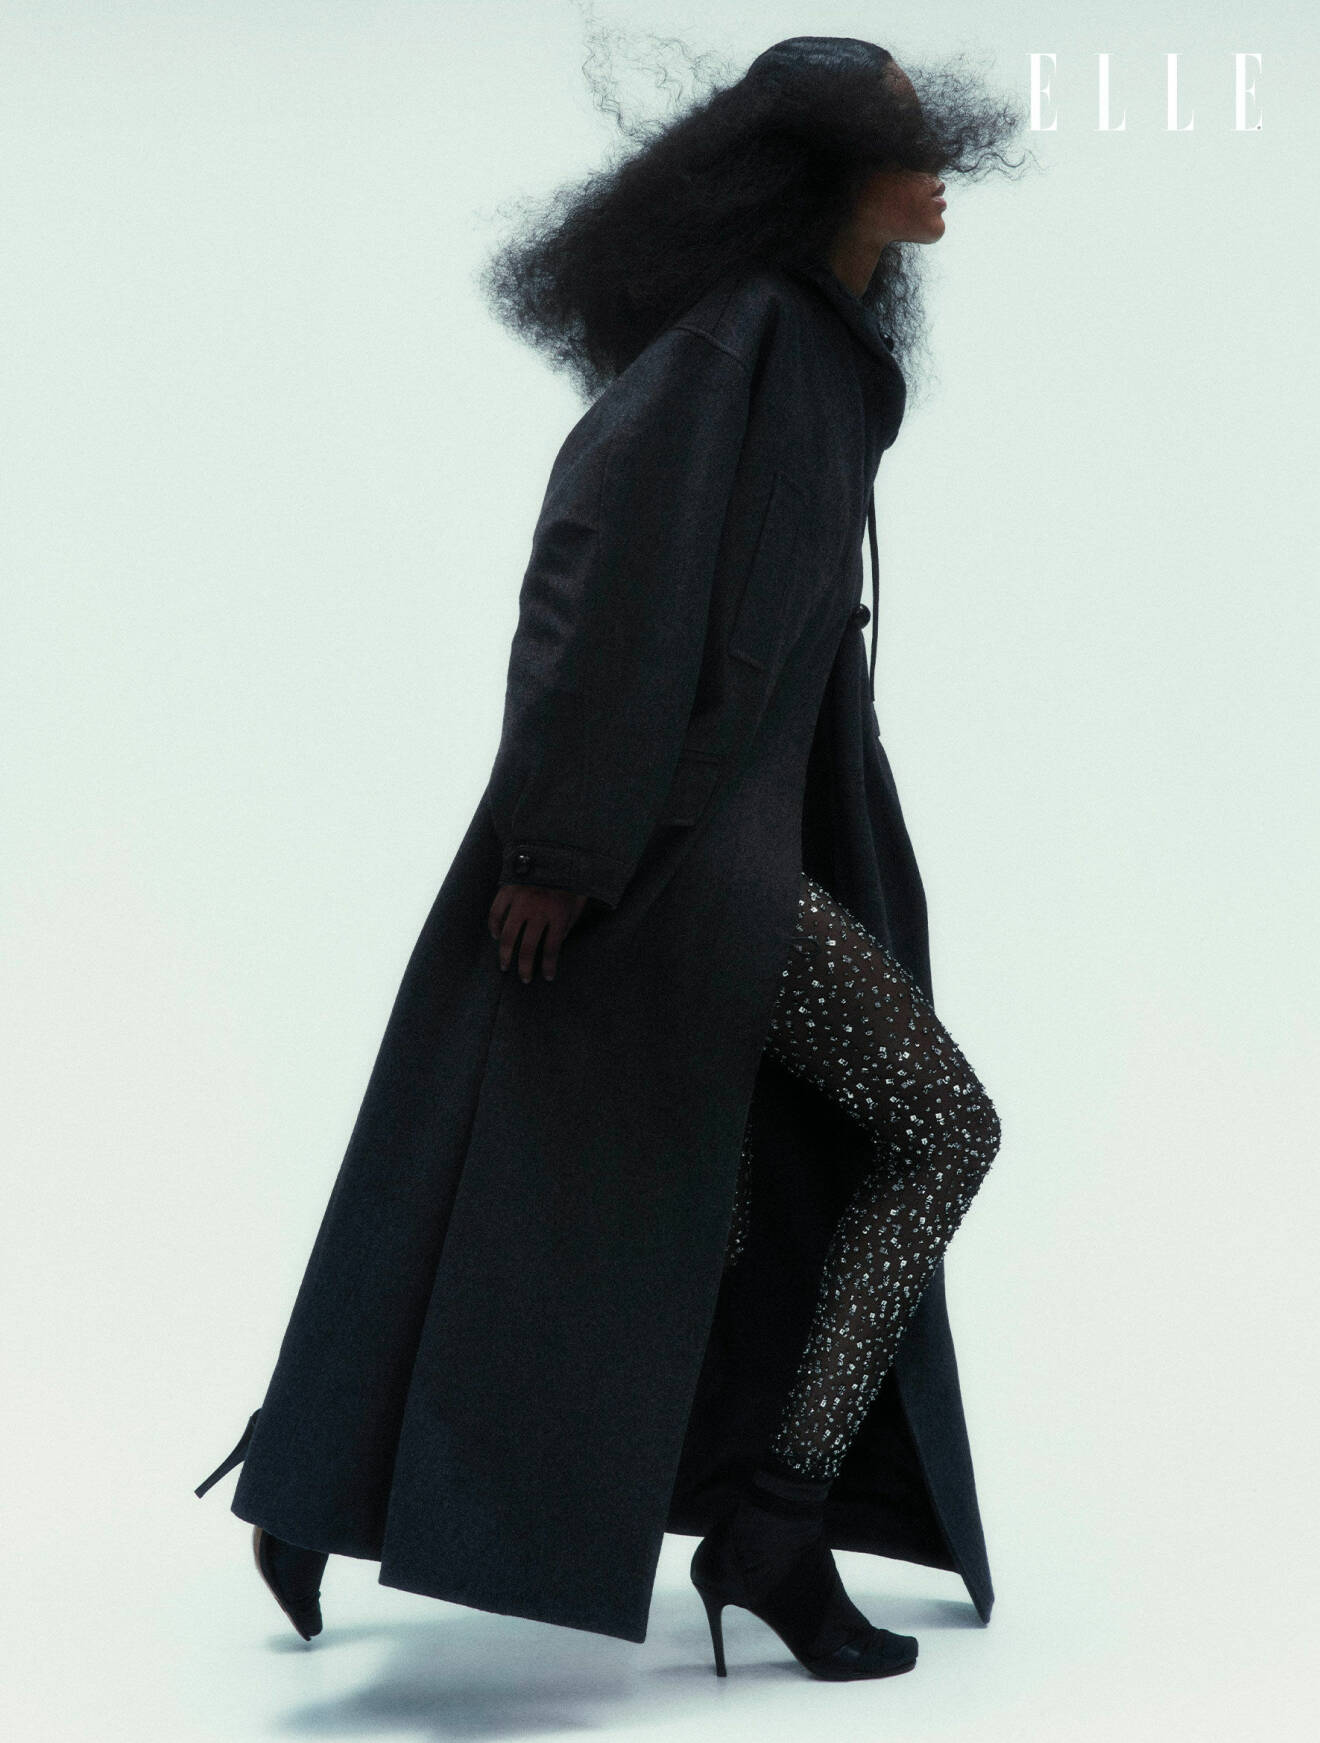 Modellen har på sig en svart kappa och byxor med strass, båda från Isabel Marant